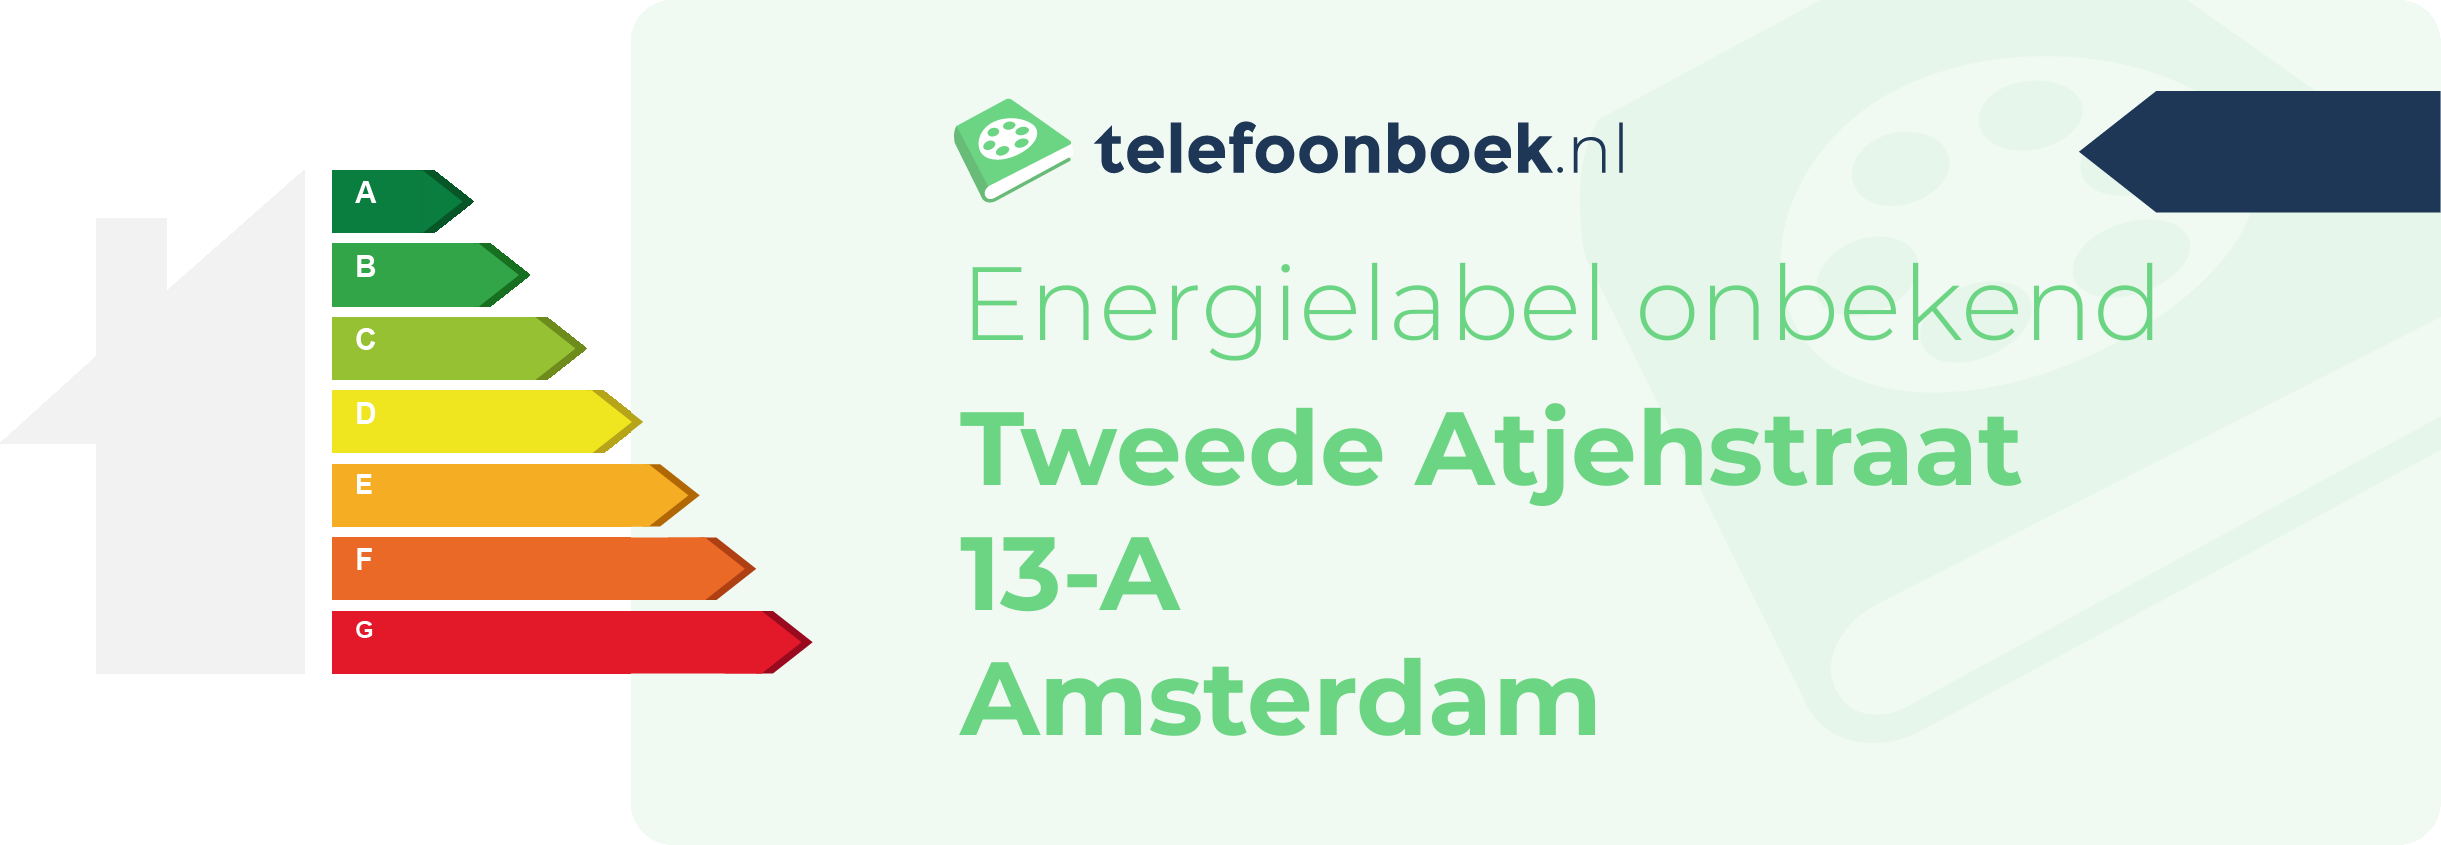 Energielabel Tweede Atjehstraat 13-A Amsterdam